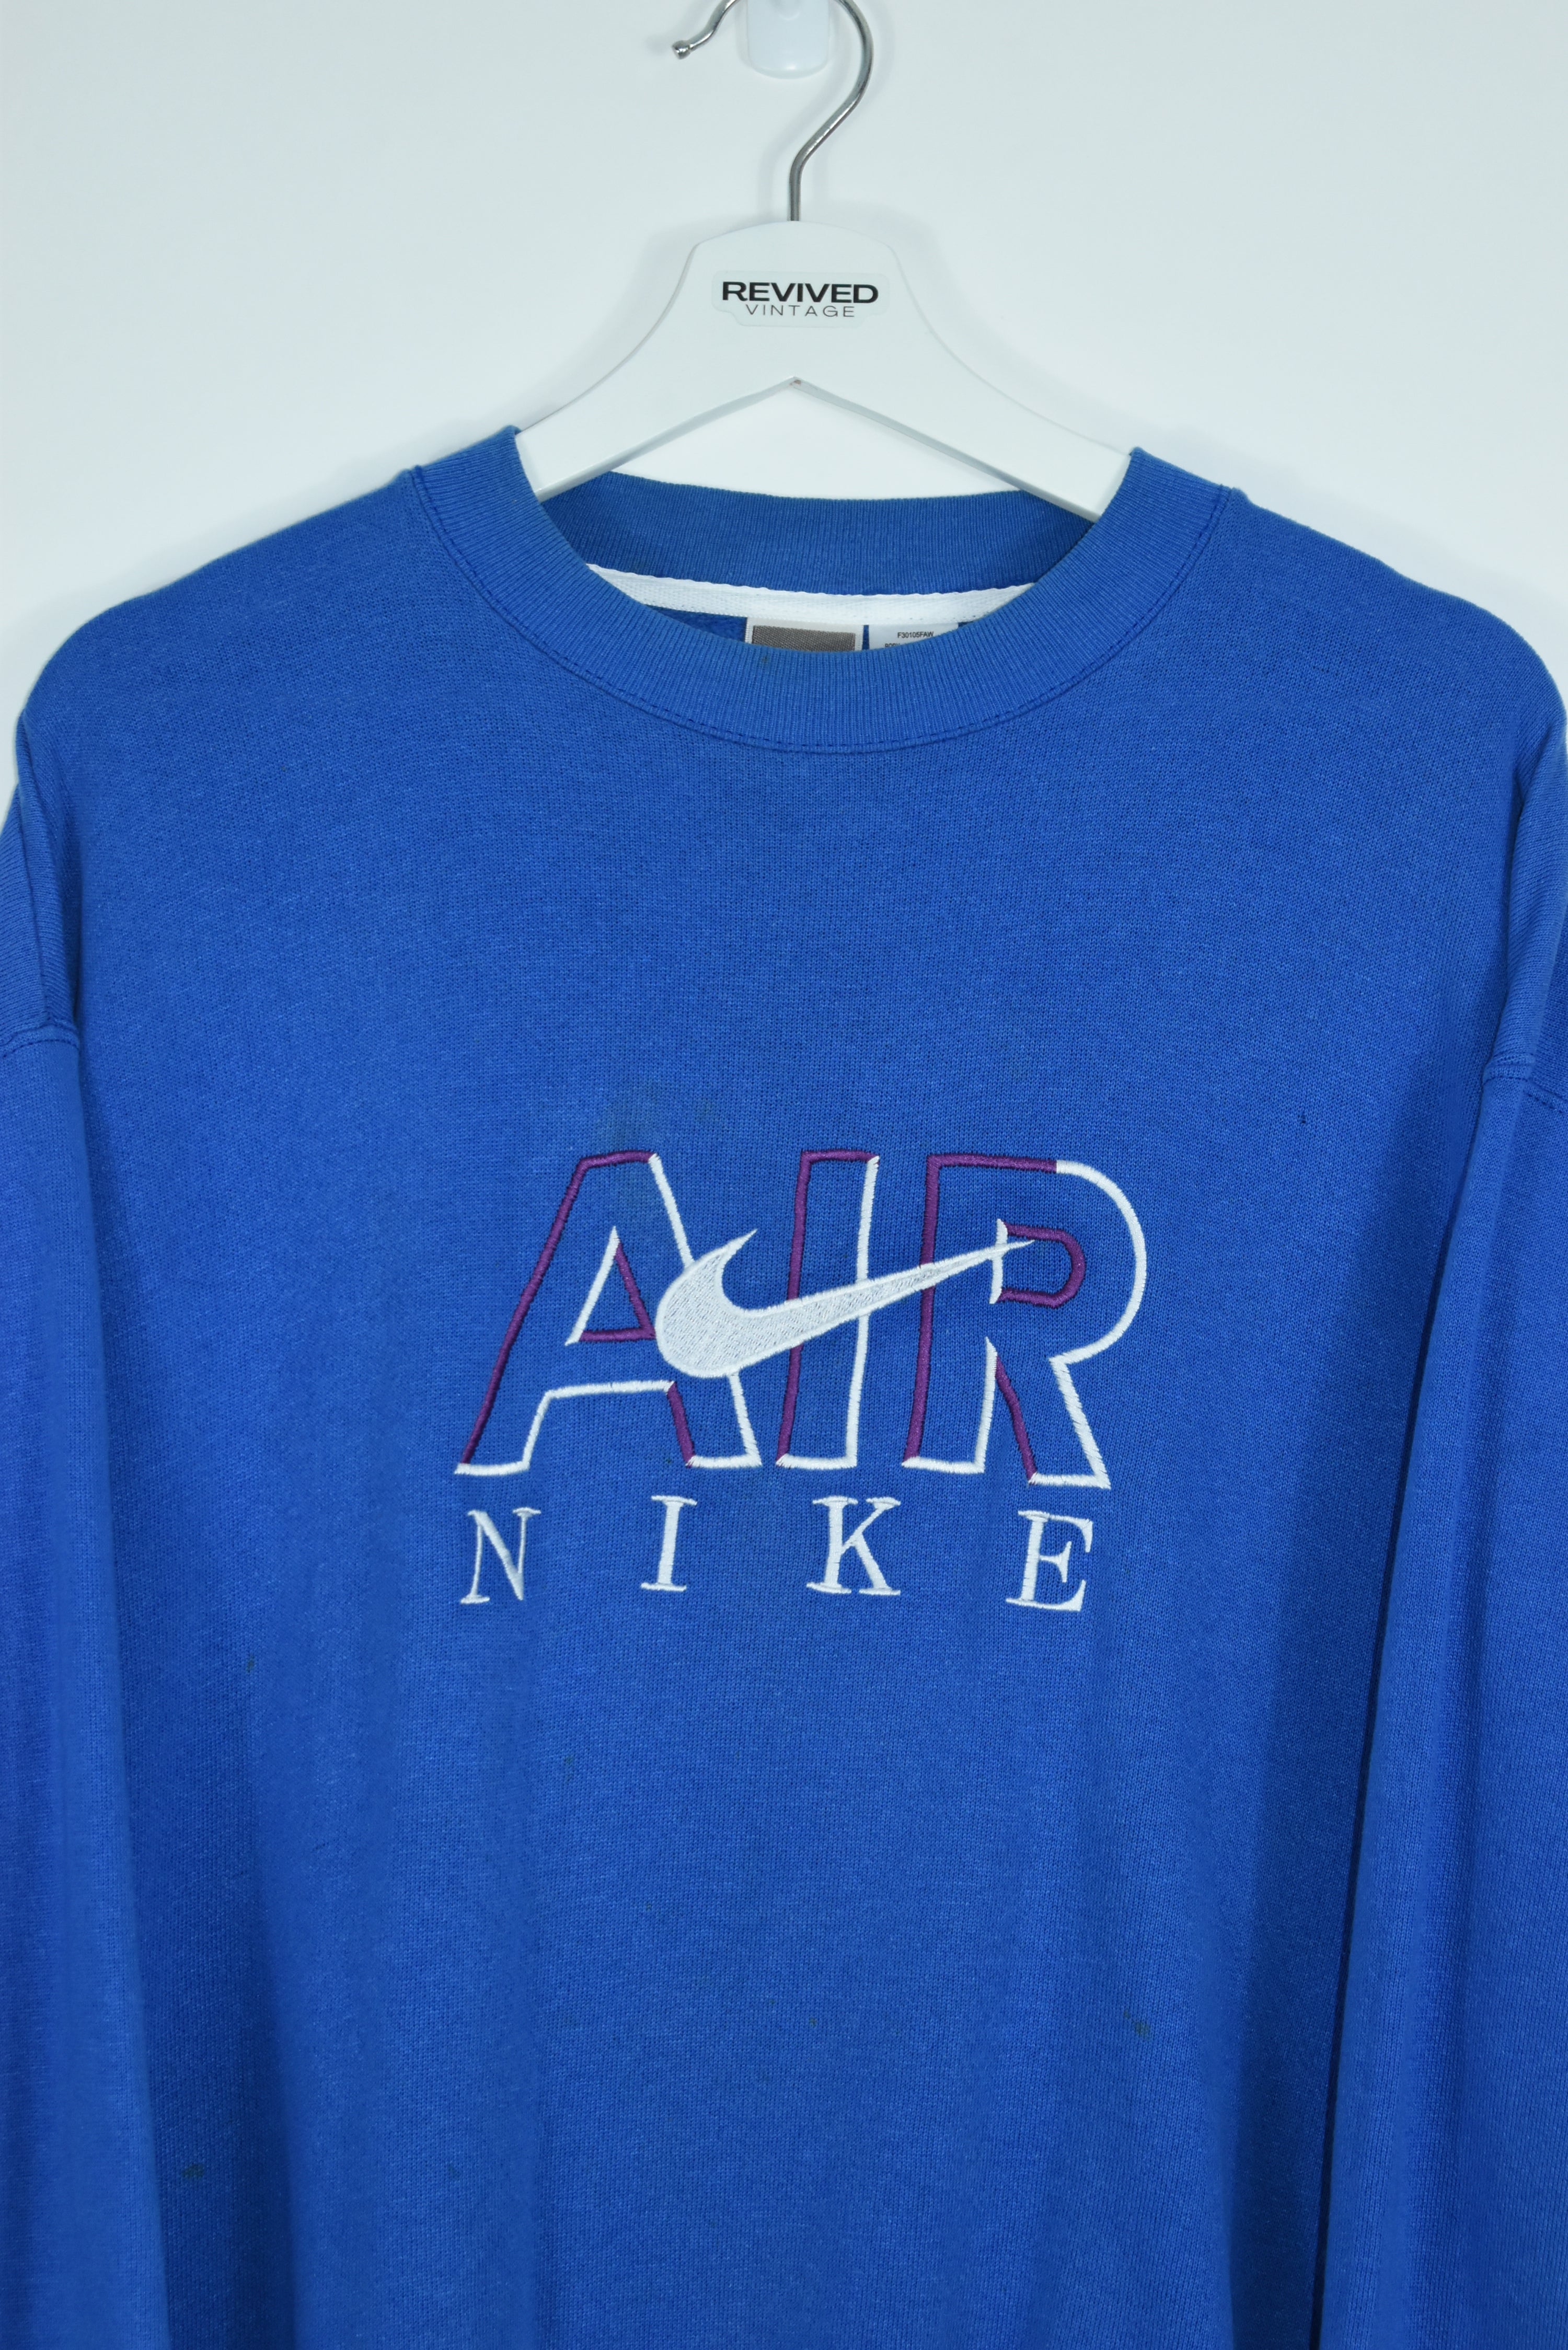 Vintage Nike Air Blue Embroidery Bootleg Sweatshirt Xlarge